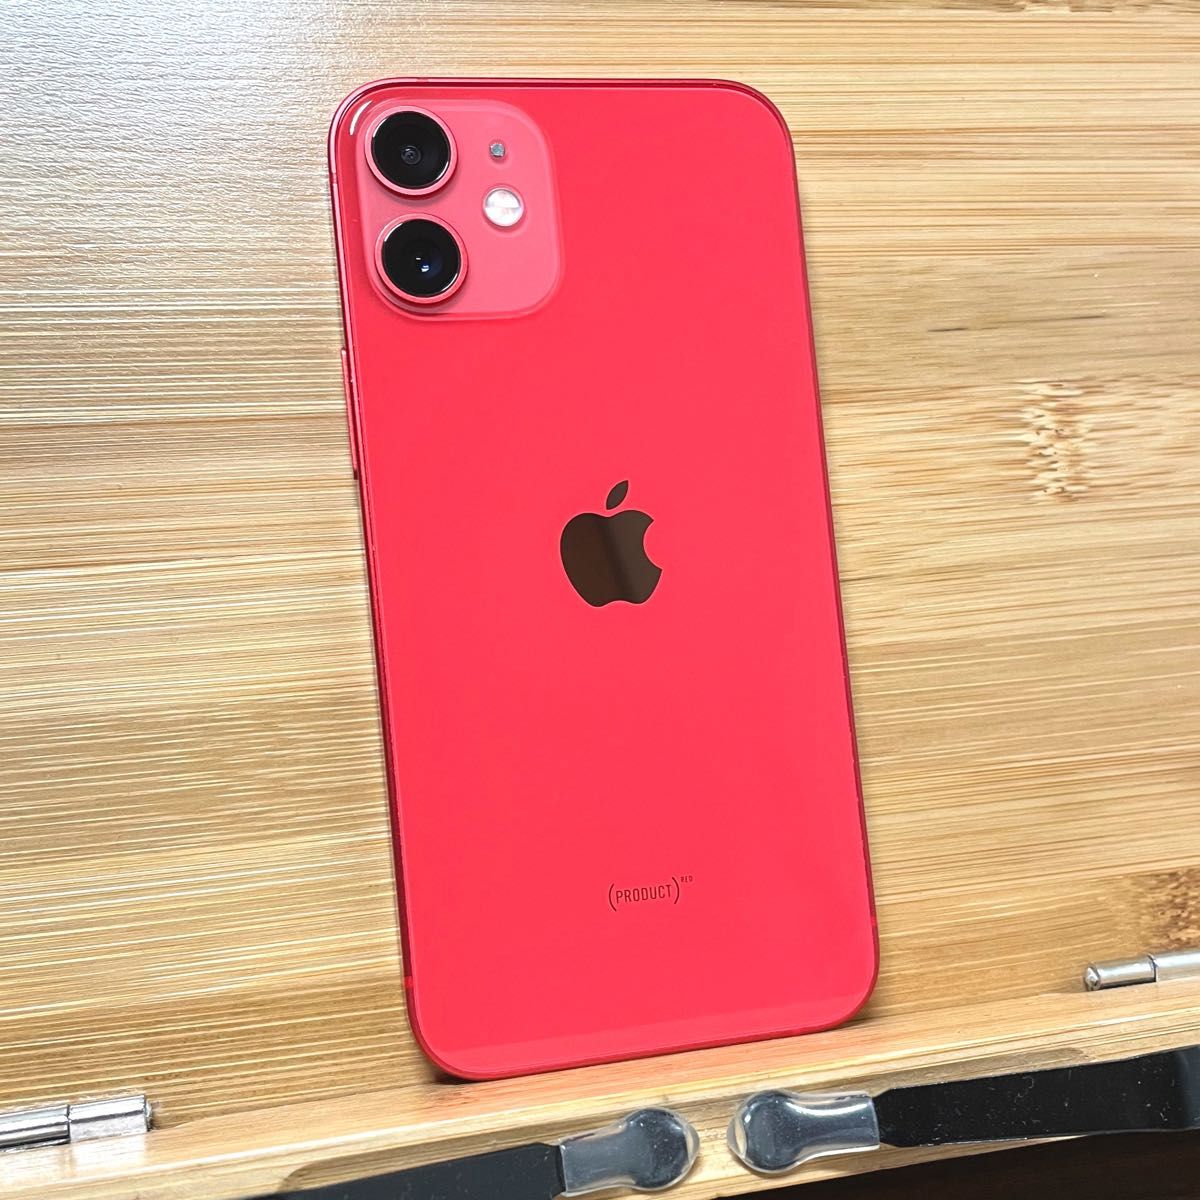 iPhone8 イヤフォン付 red 赤 simフリー 64GB アイフォン - www.roofrx.com